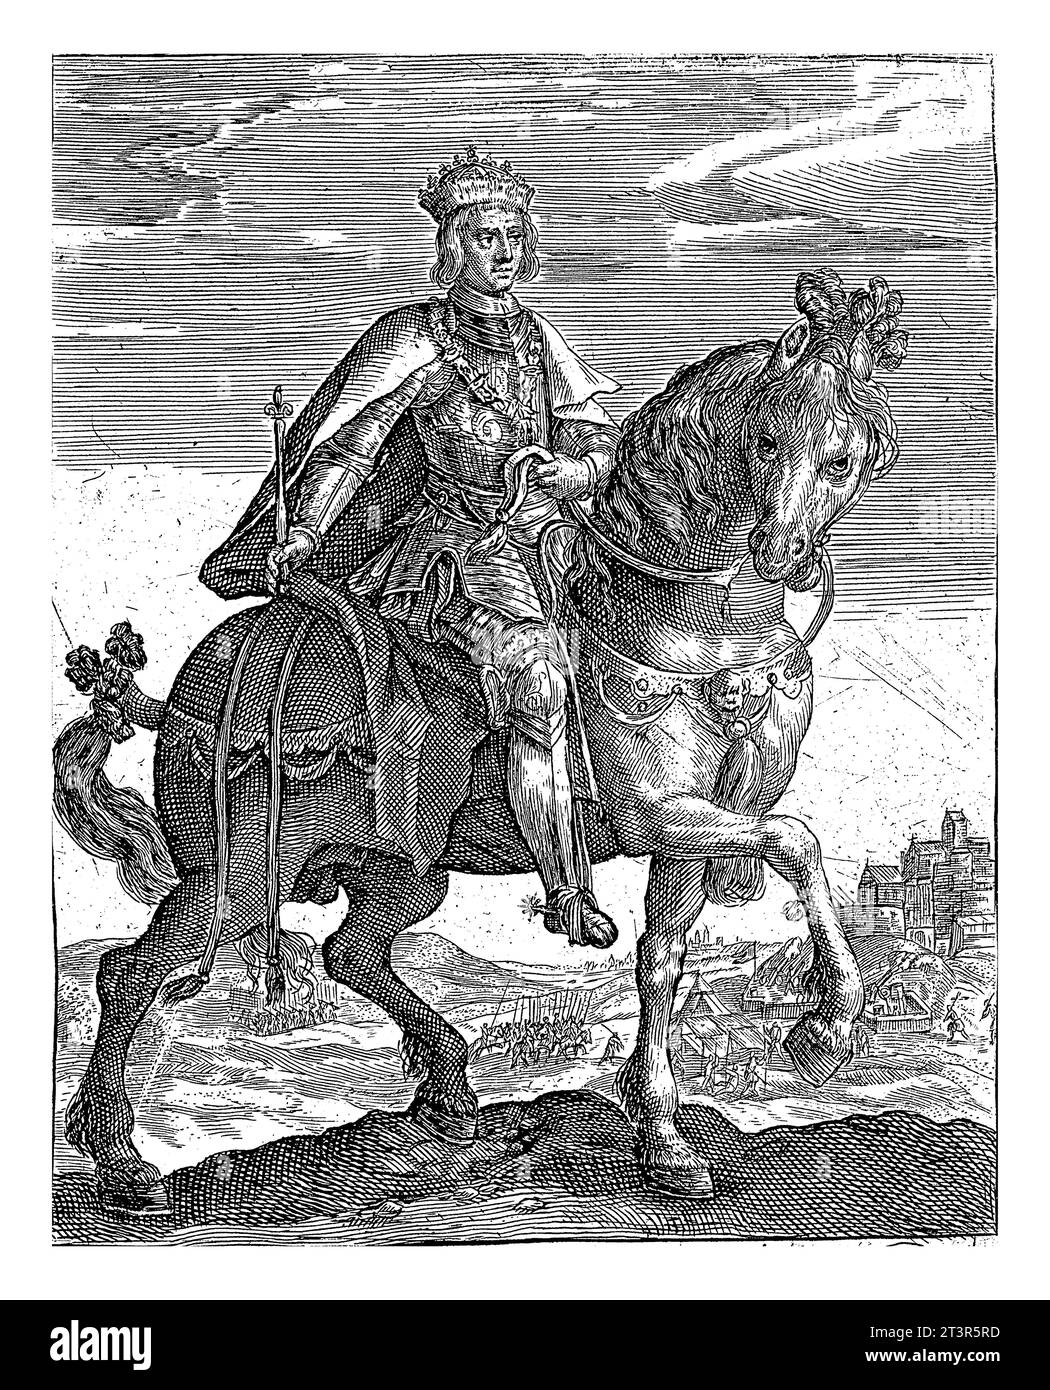 Massimiliano i d'Asburgo a cavallo, Crispijn van de Passe (i), 1604 Massimiliano i d'Asburgo, imperatore romano tedesco, a cavallo. Foto Stock